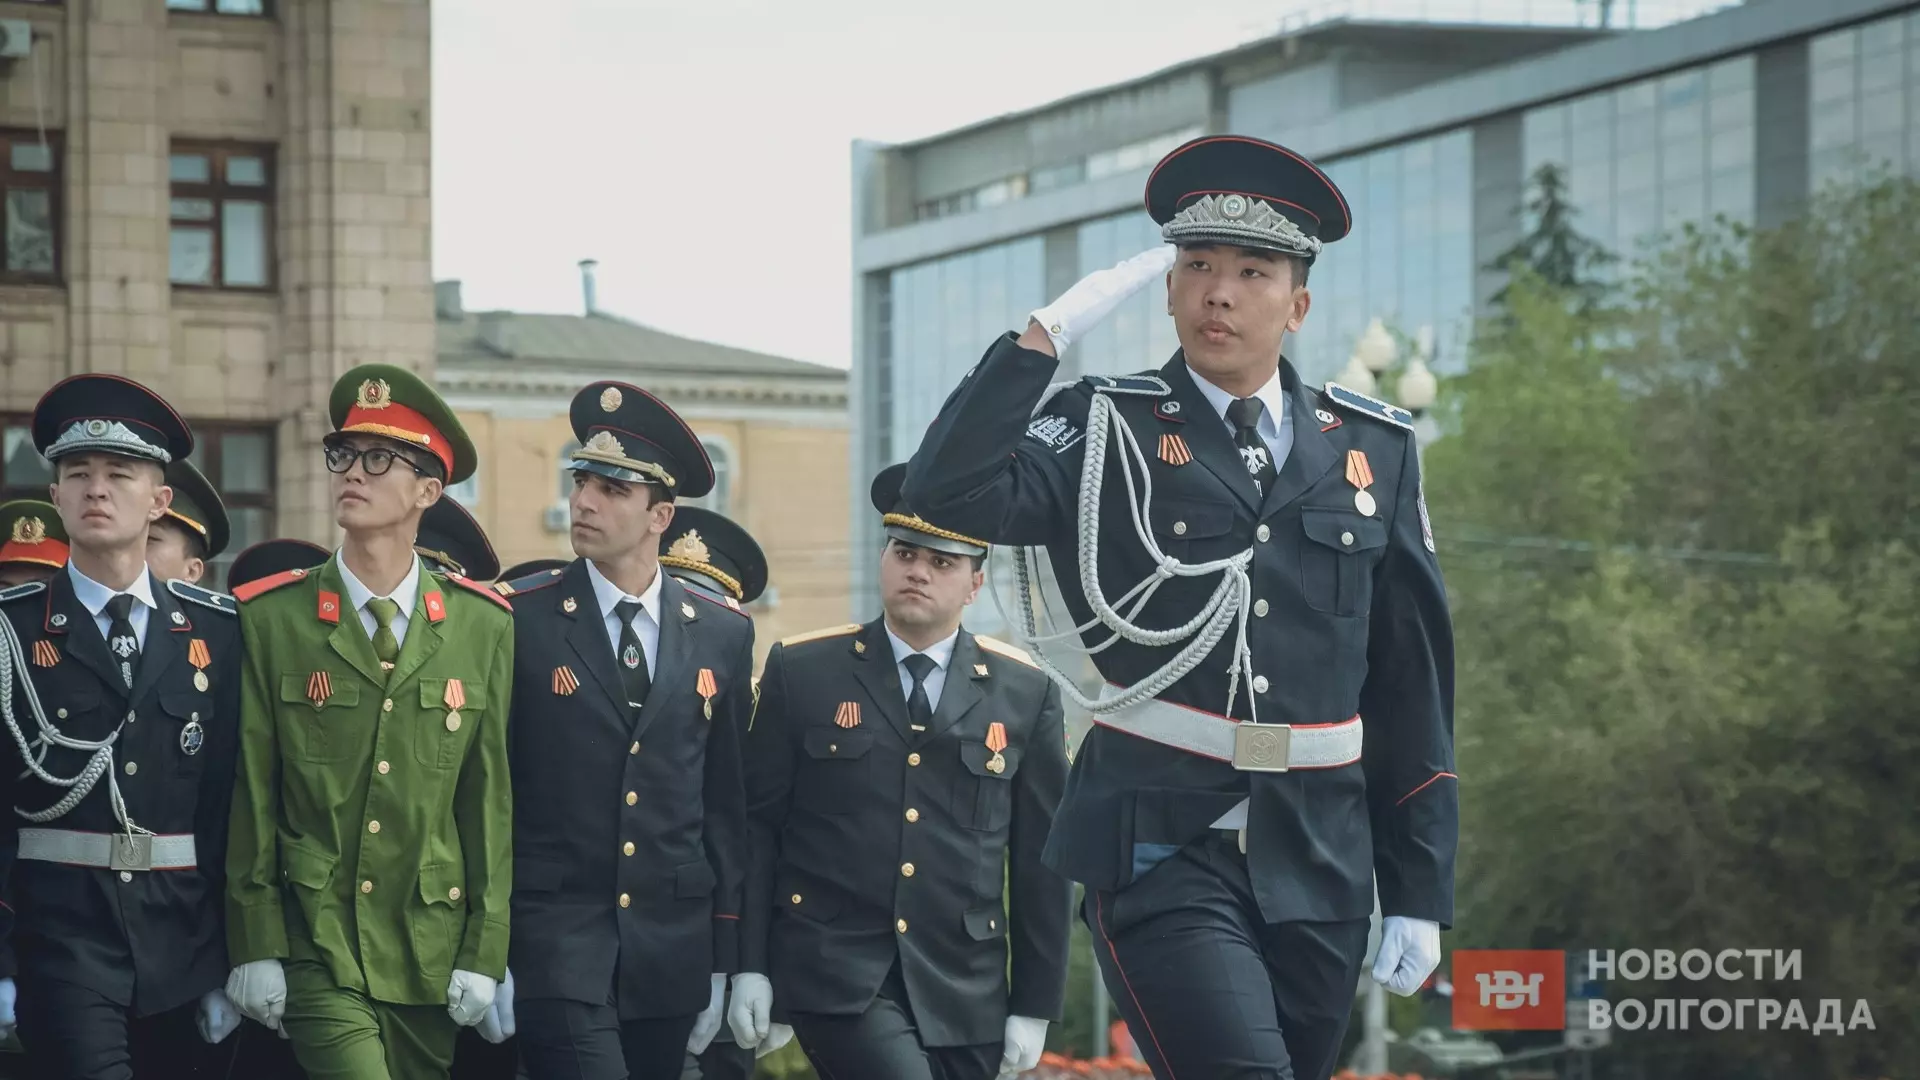 Иностранцы приняли участие в Параде Победы в Волгограде 9 мая